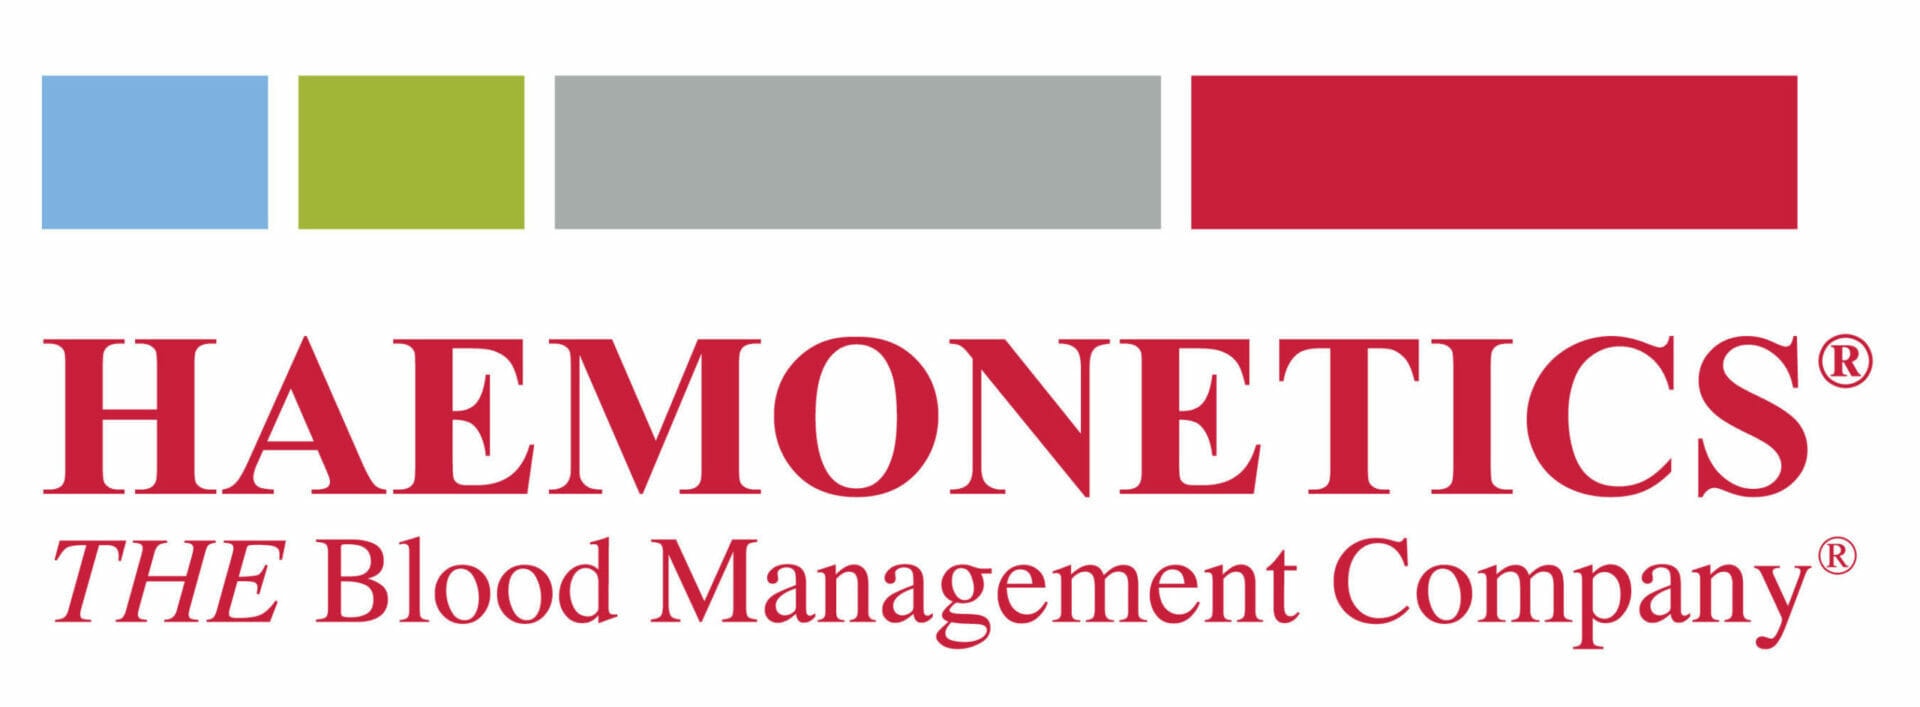 Haemometrics the blood management company logo.